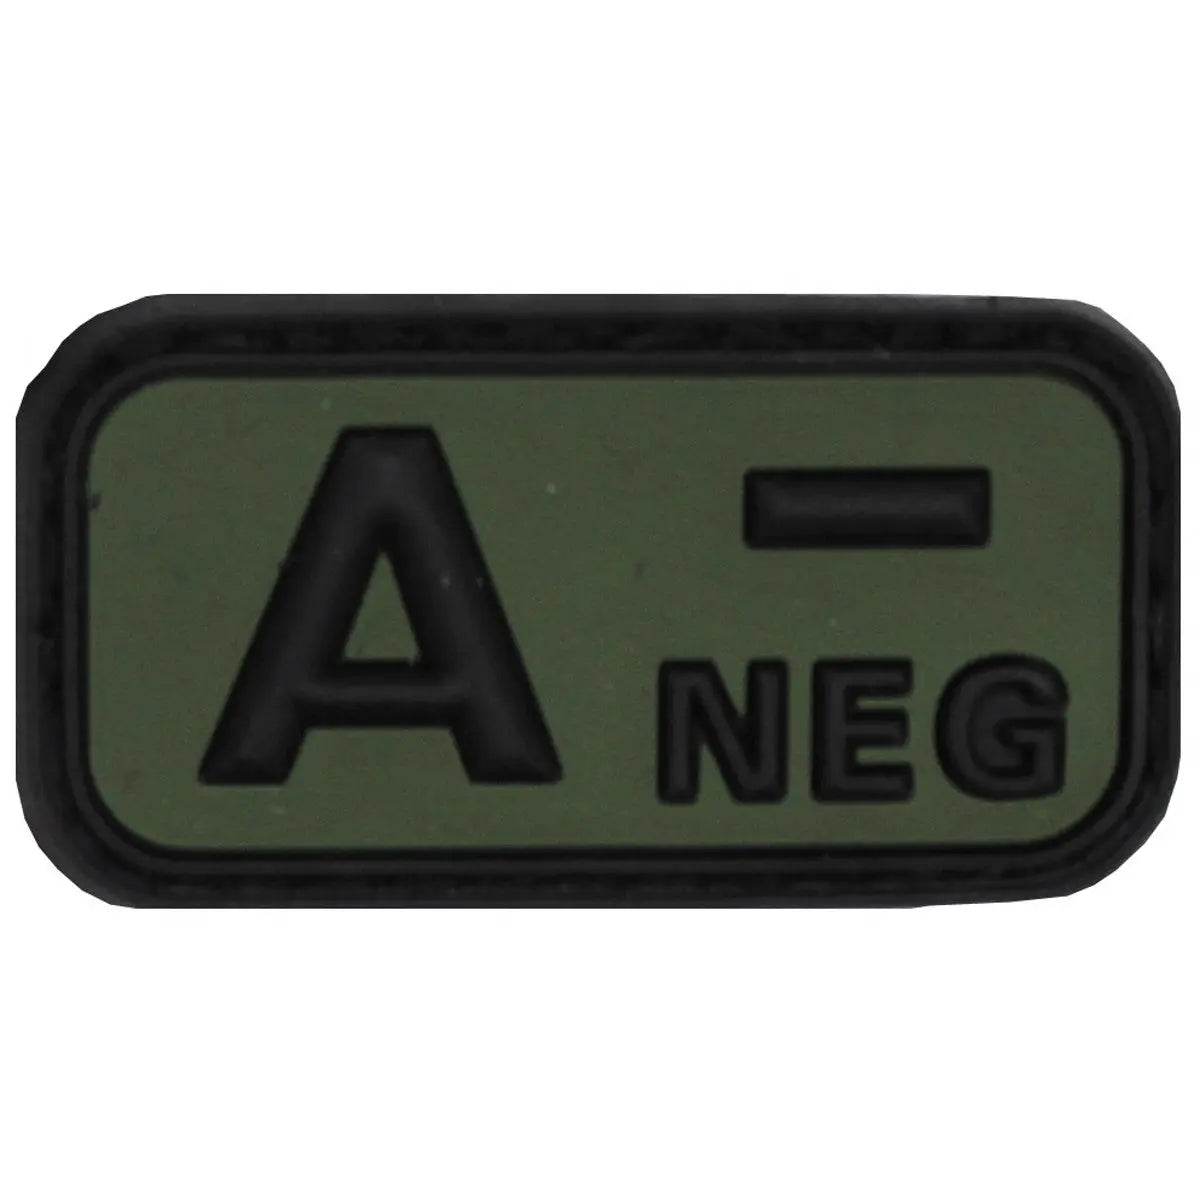 Velcro Patch, black-OD green, blood group "A NEG", 3D